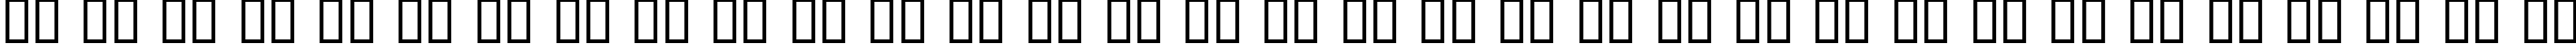 Пример написания русского алфавита шрифтом CygnetRound